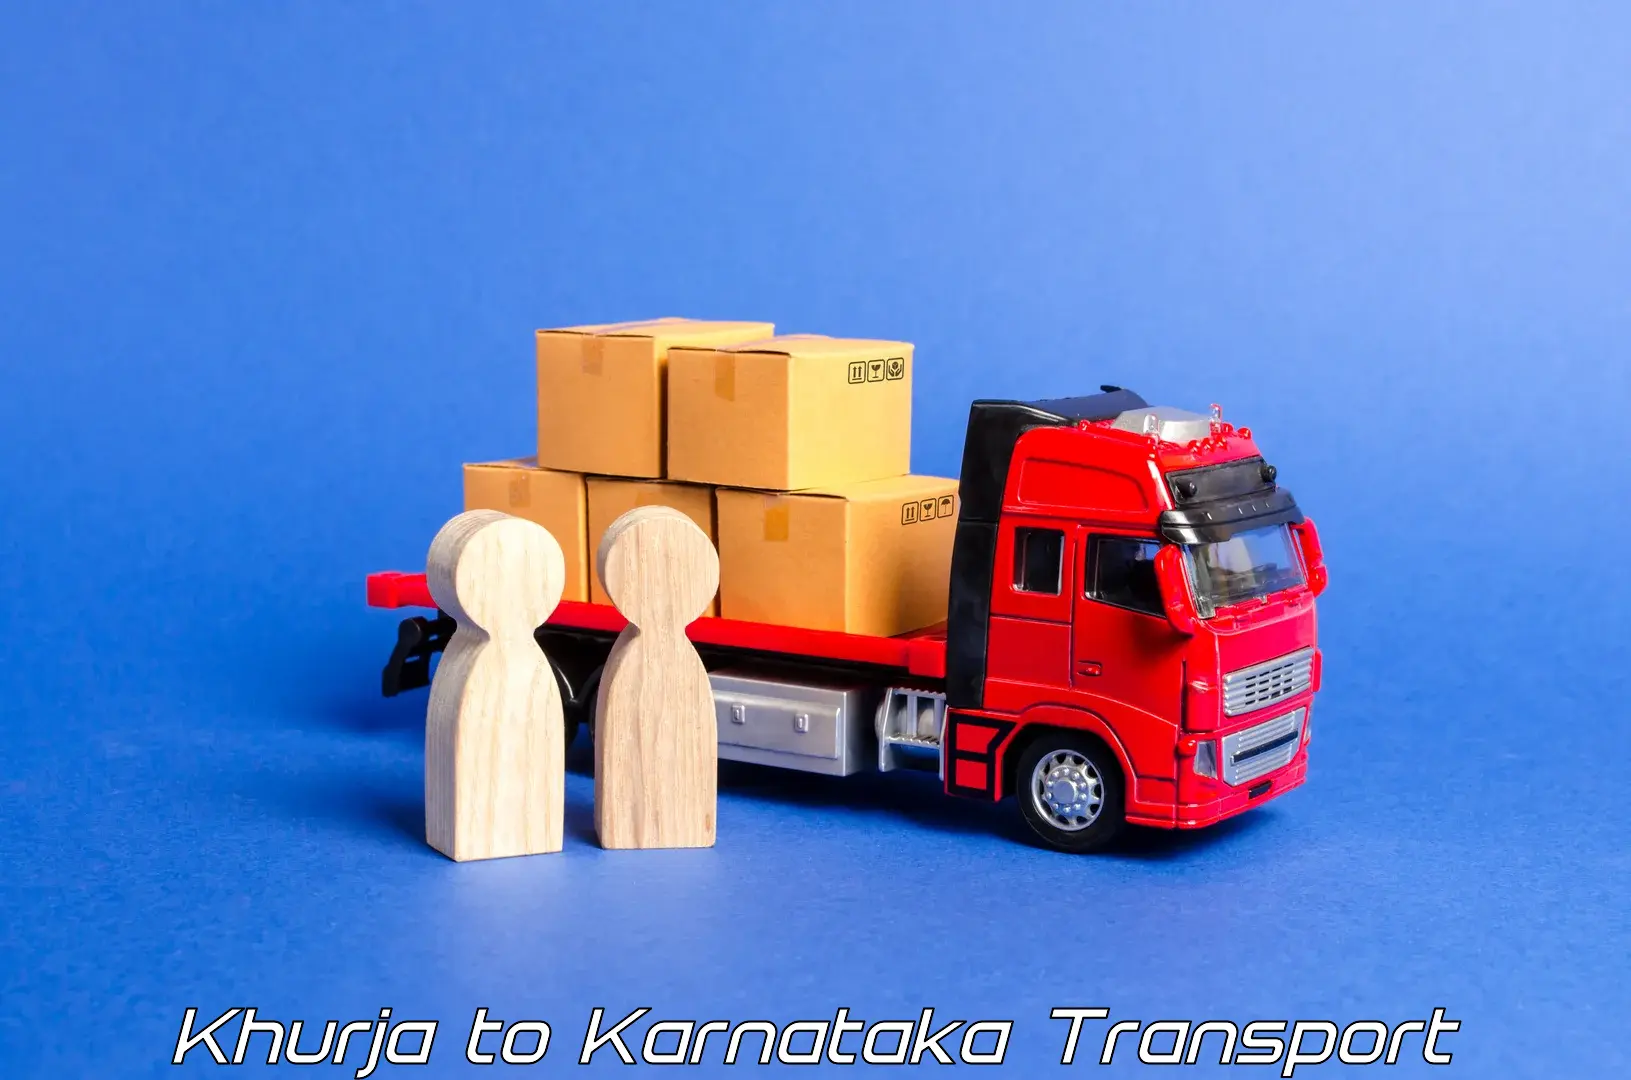 Online transport booking Khurja to Humnabad